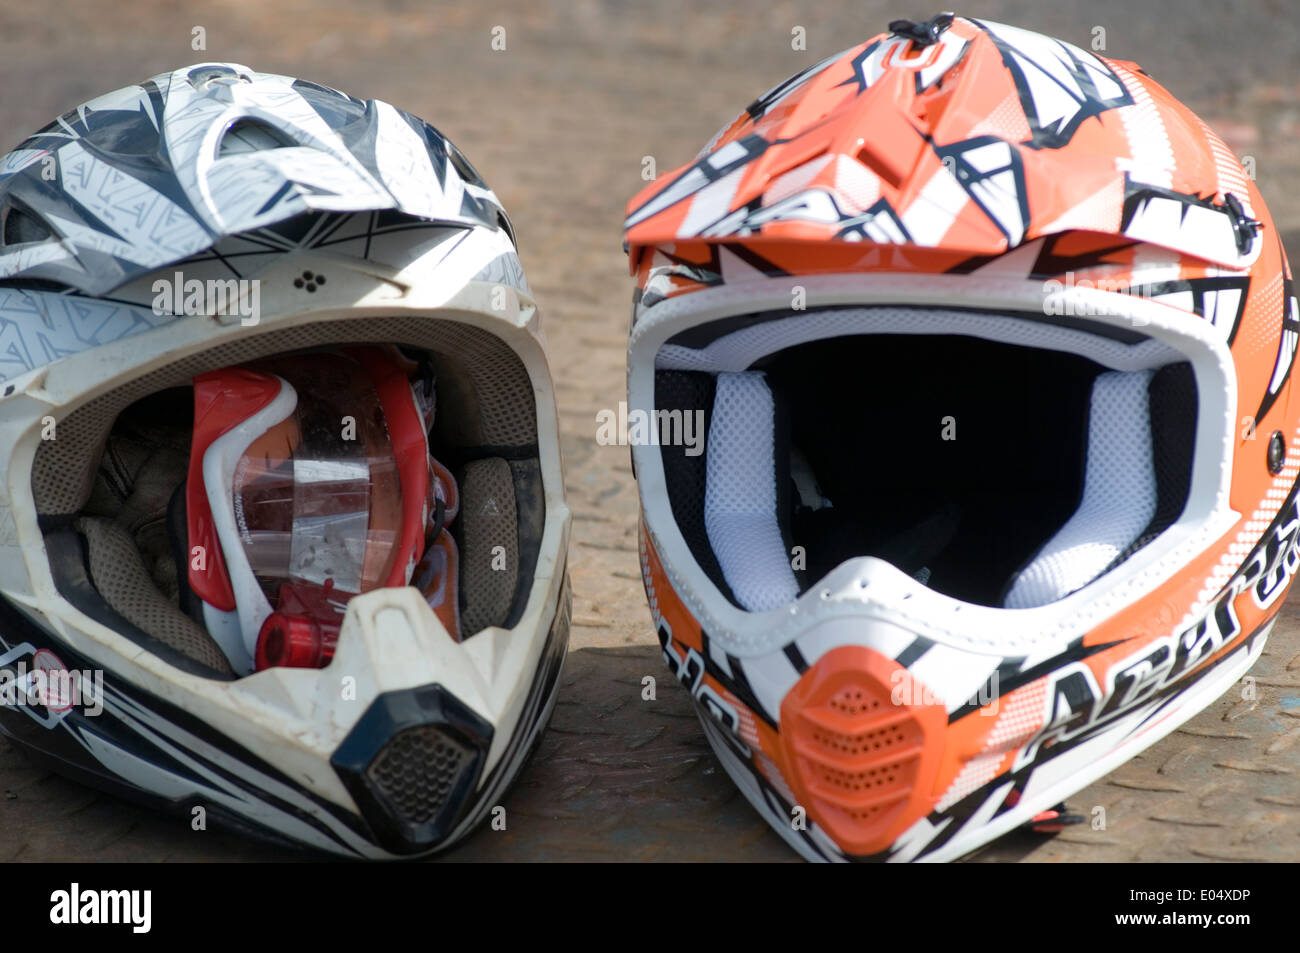 Motor cross x motocross moto cross casque de protection de la tête casques Banque D'Images